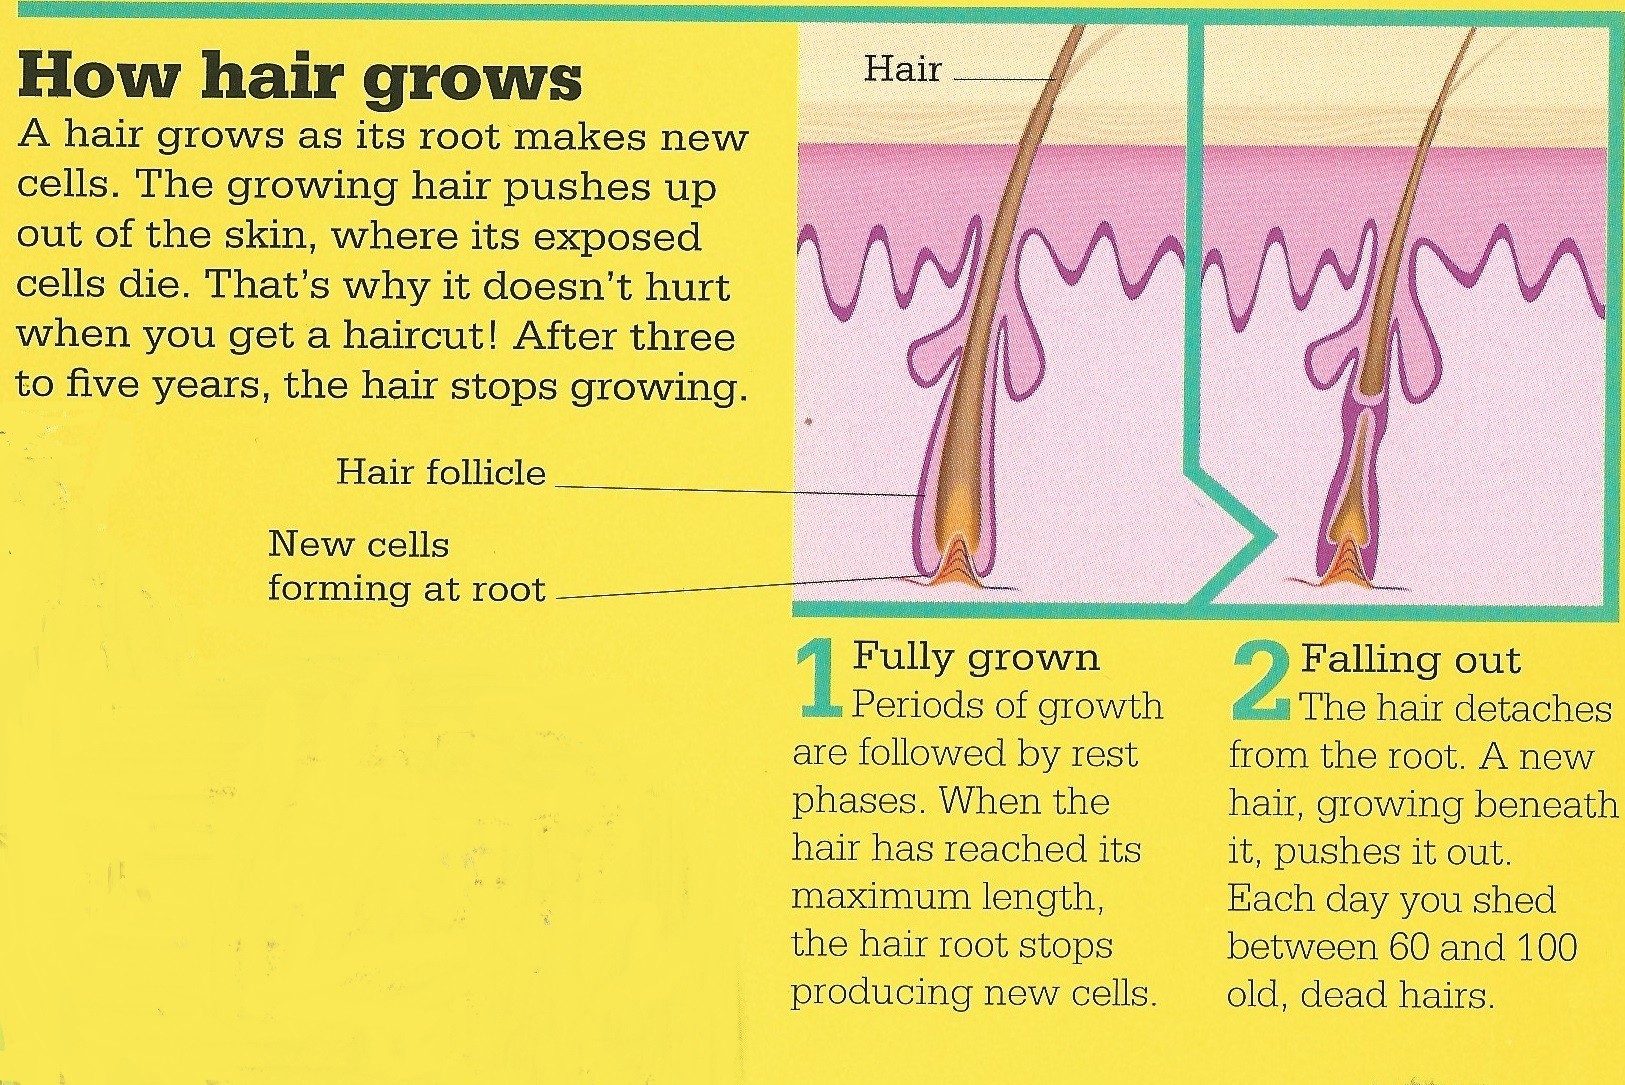 当发根内有新的细胞诞生,不断生长的毛发就会从头皮表面露出.